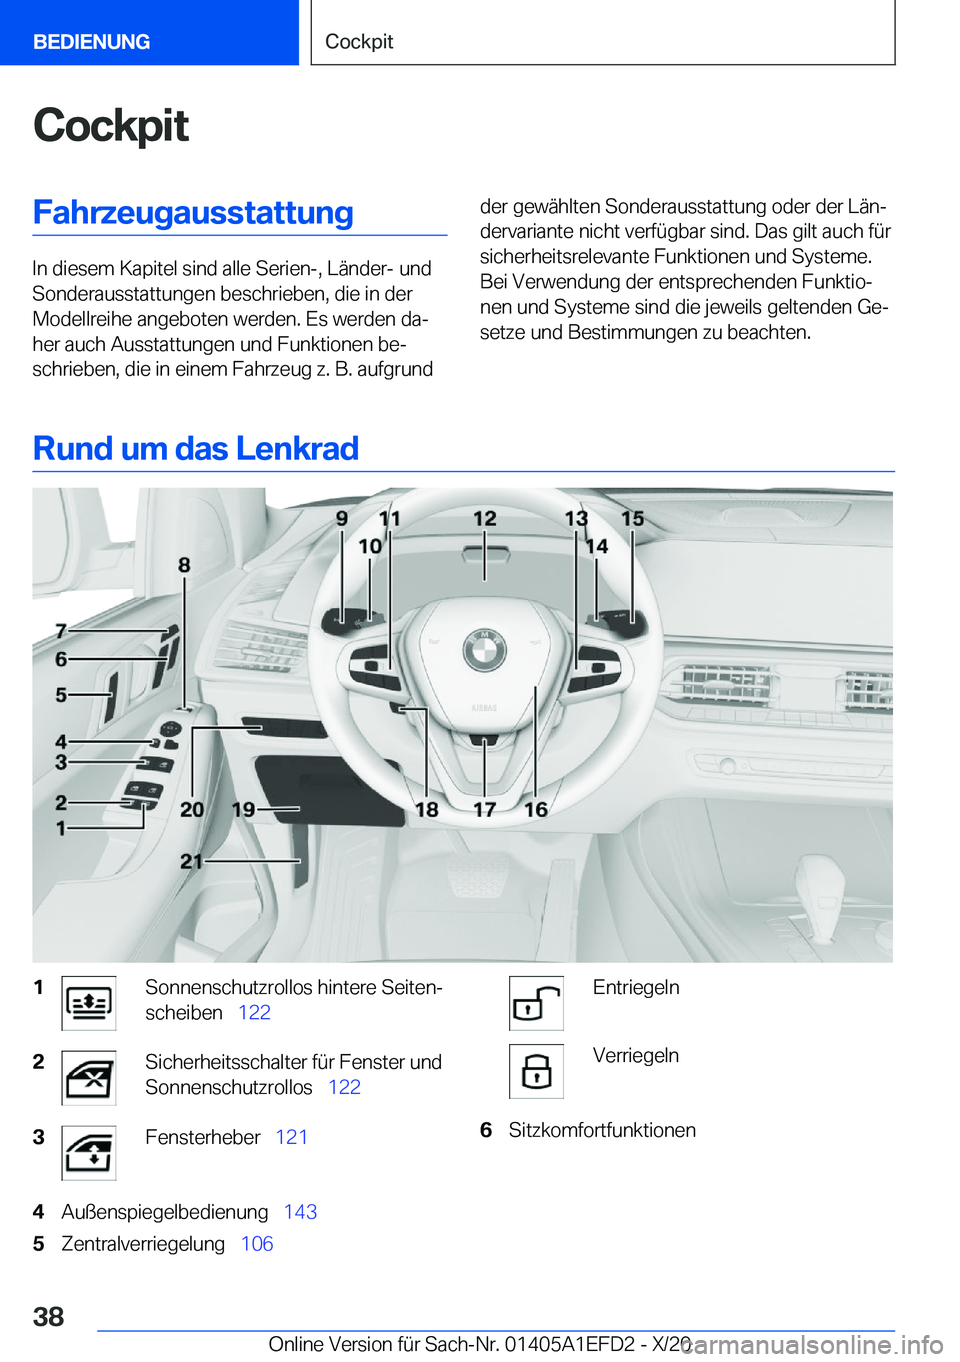 BMW X7 2021  Betriebsanleitungen (in German) �C�o�c�k�p�i�t�F�a�h�r�z�e�u�g�a�u�s�s�t�a�t�t�u�n�g
�I�n��d�i�e�s�e�m��K�a�p�i�t�e�l��s�i�n�d��a�l�l�e��S�e�r�i�e�n�-�,��L�